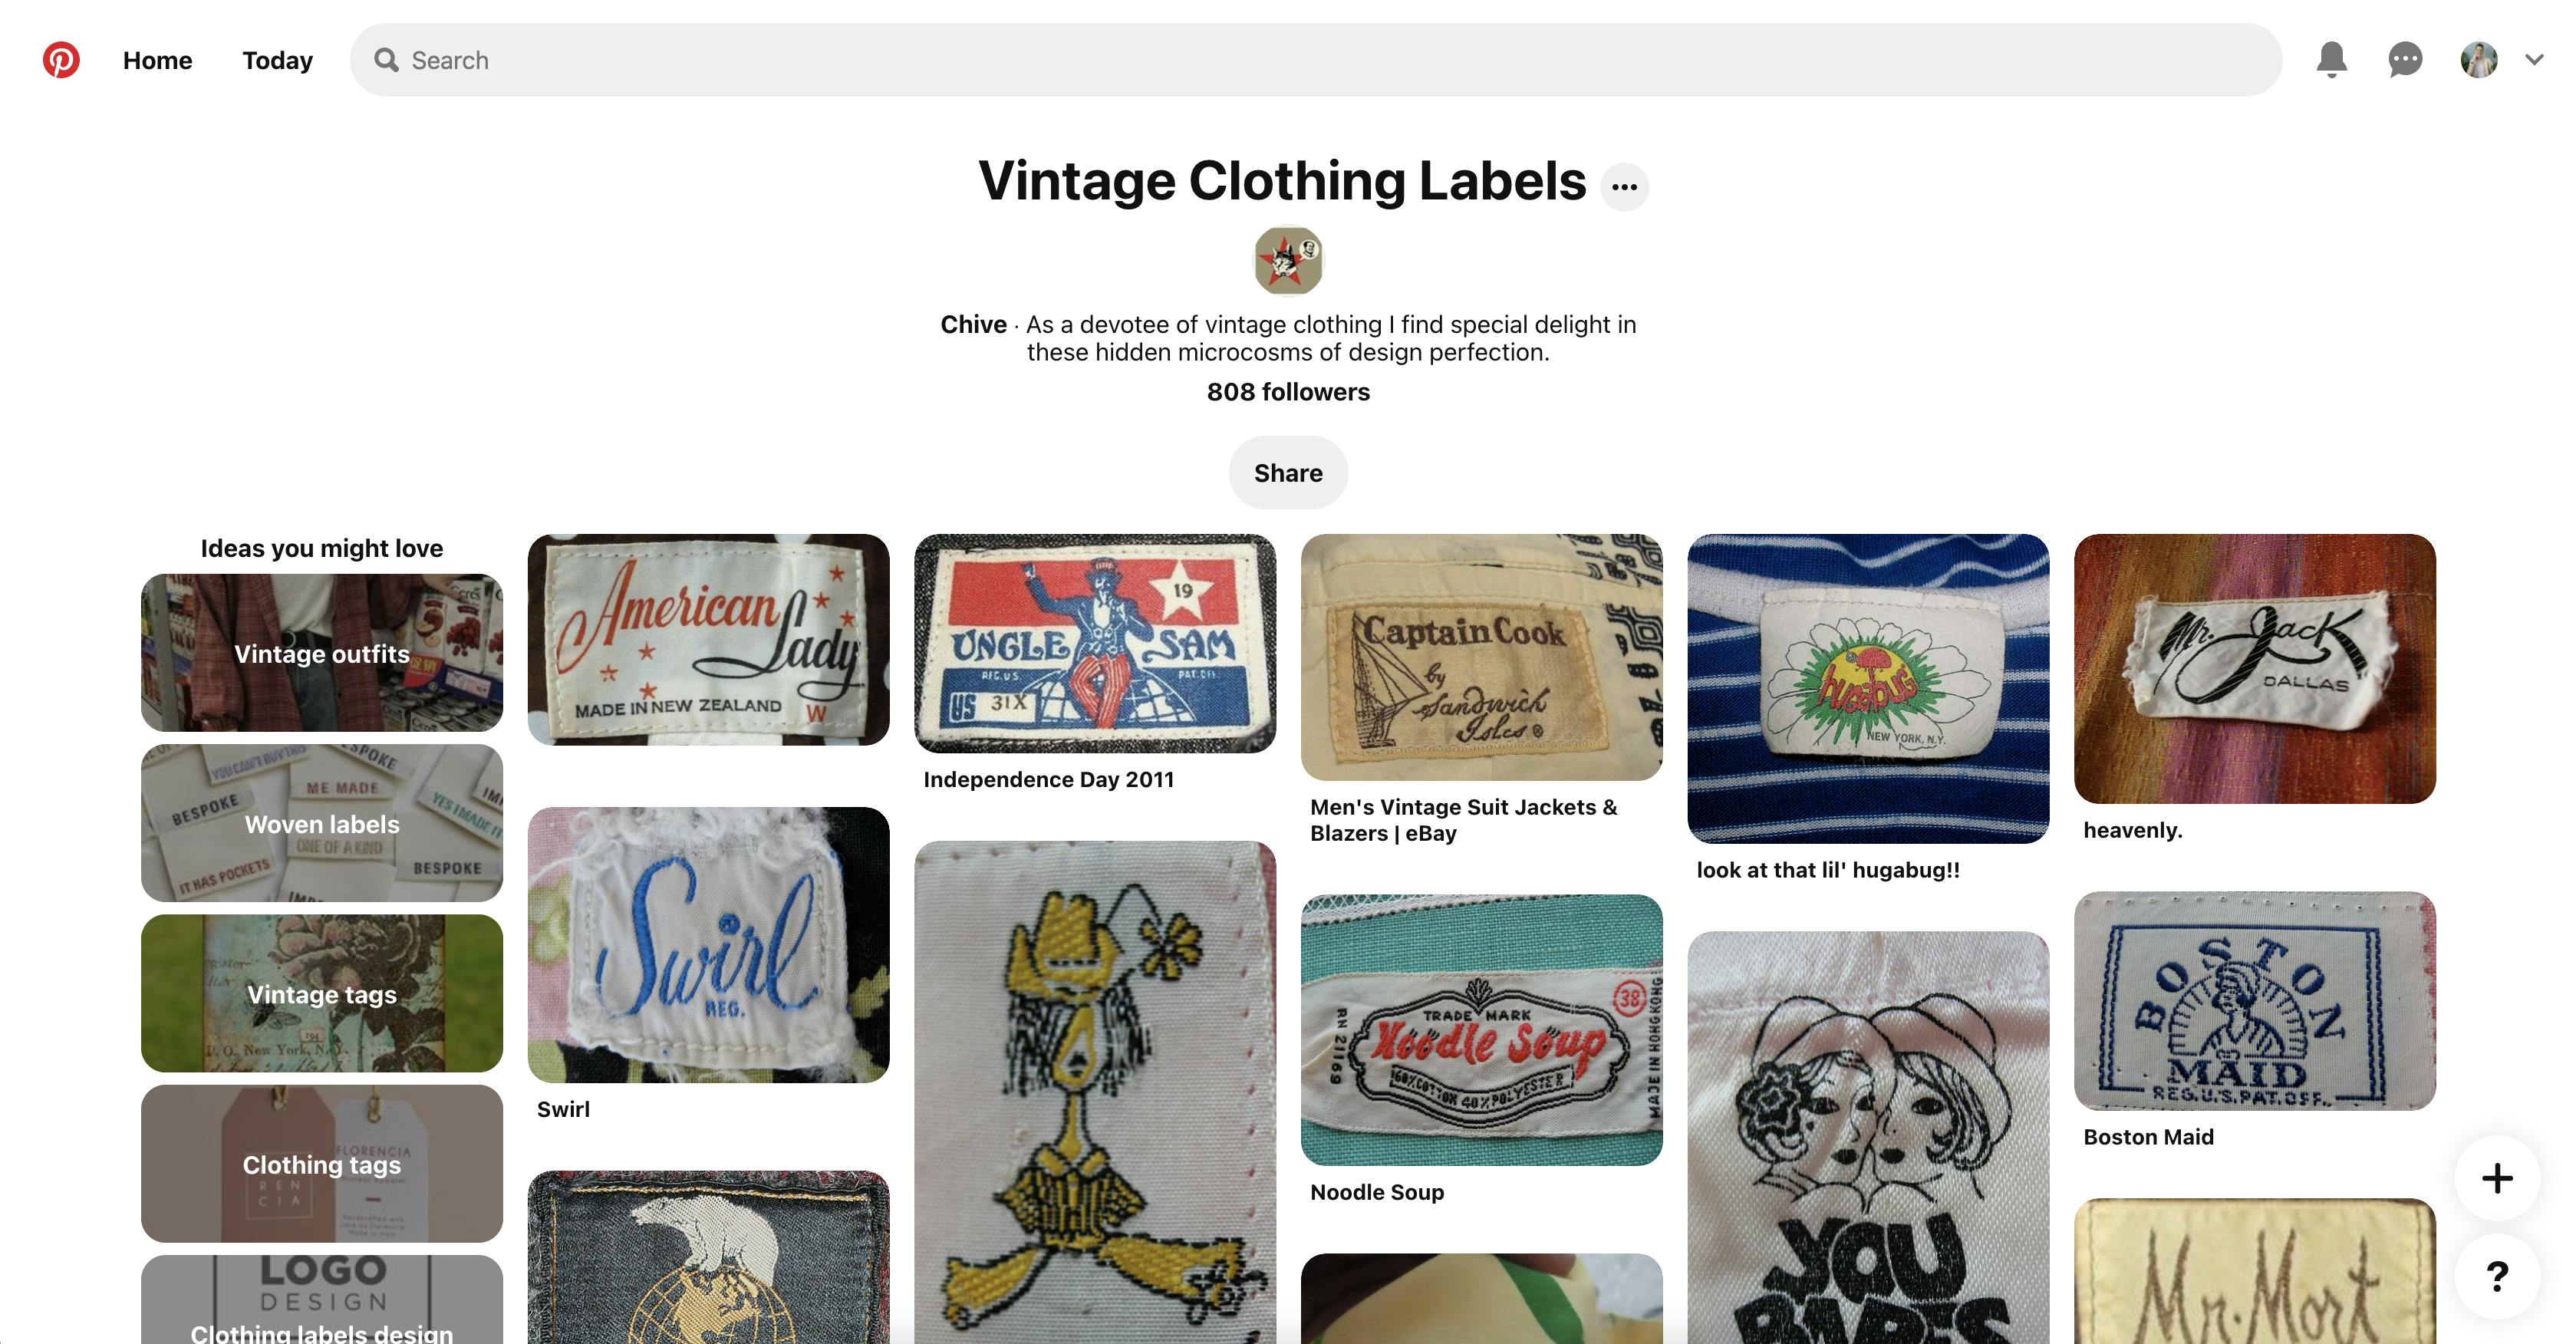  Een schermafbeelding van Chives&#039; board met vintage kledinglabels op Pinterest